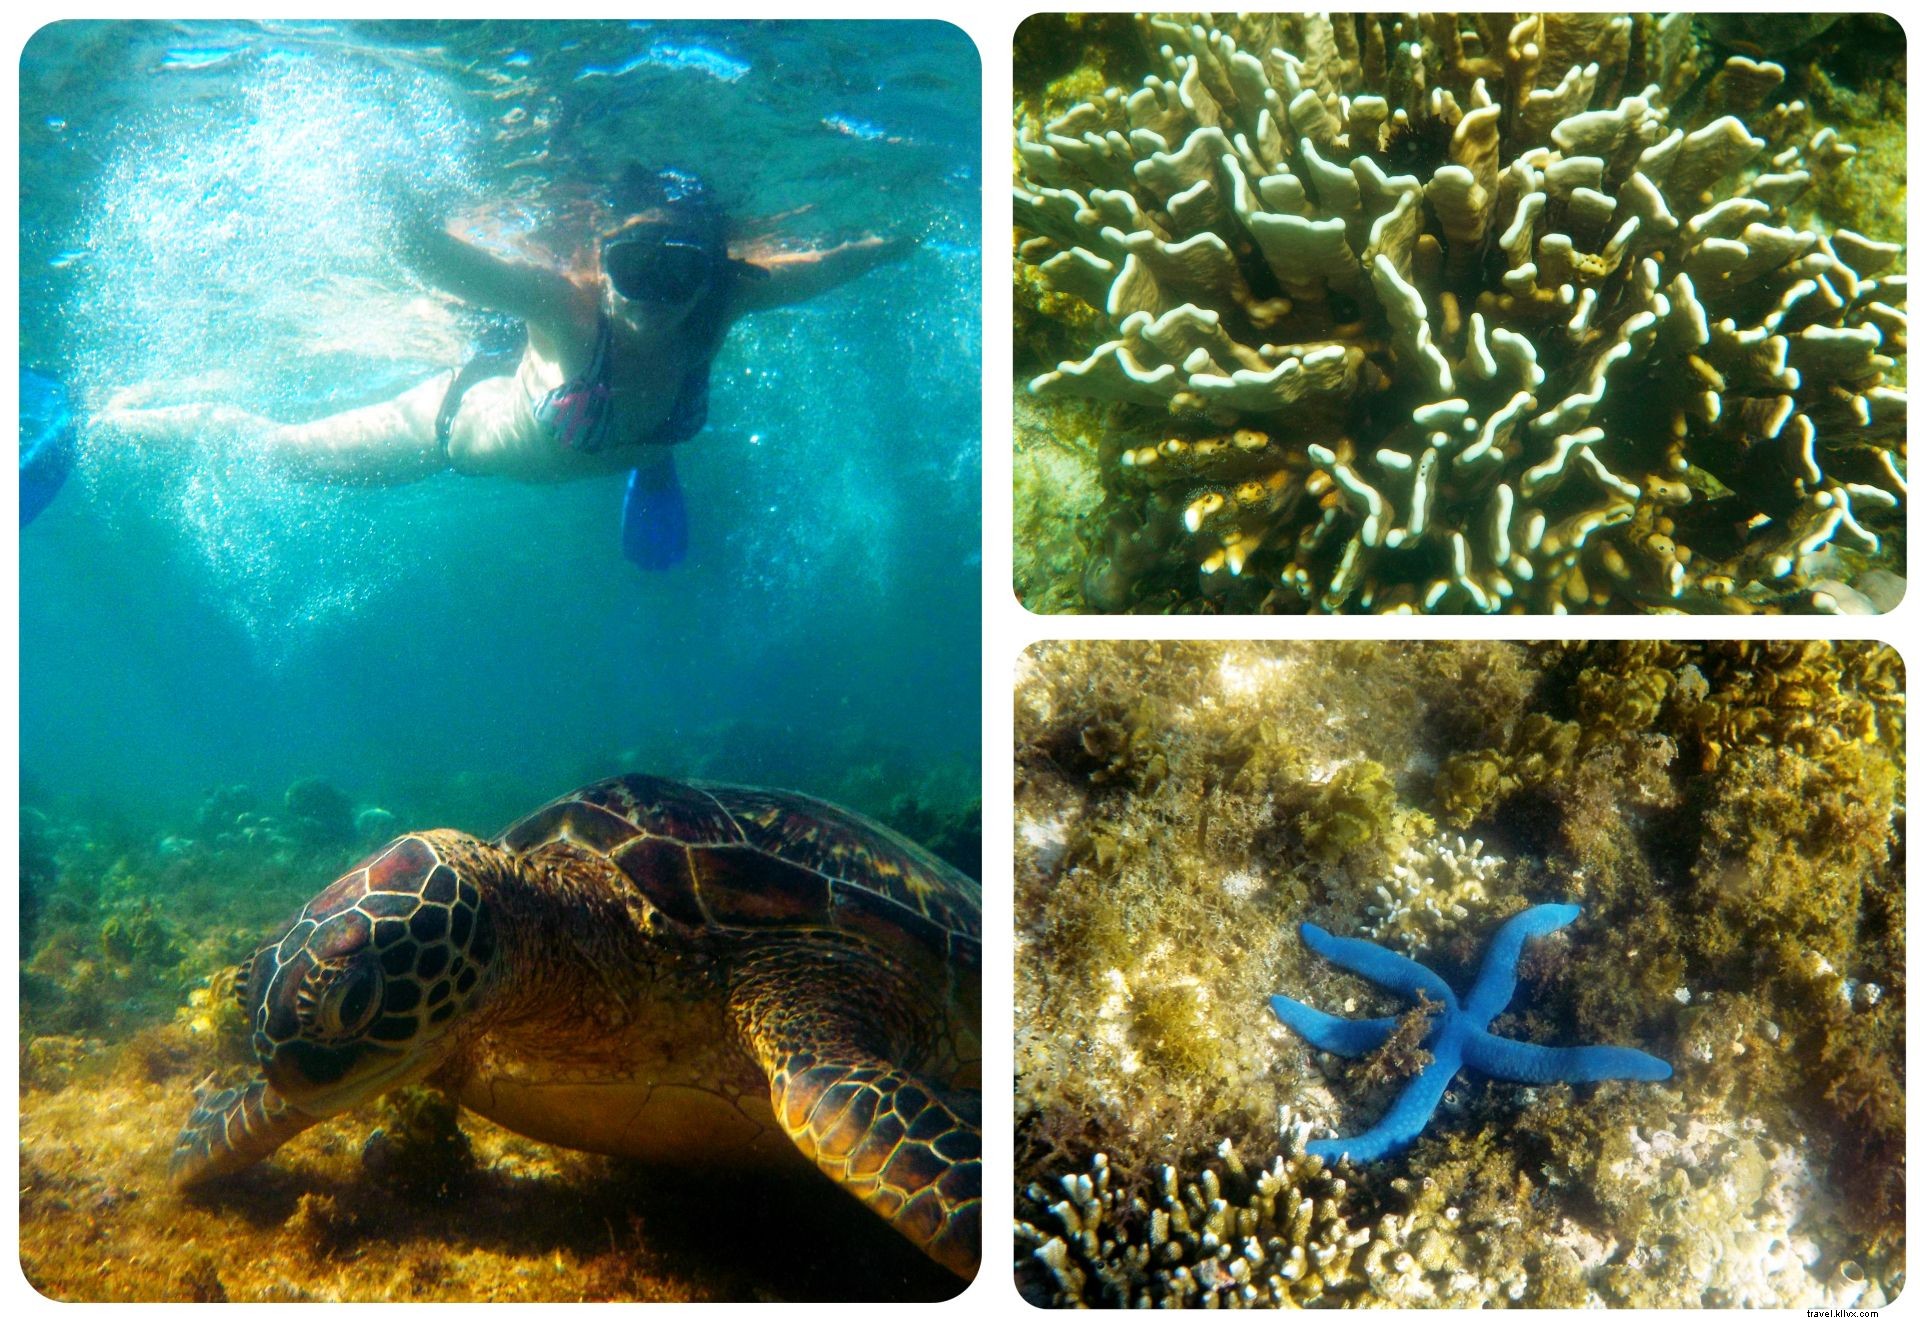 Nuotare con le tartarughe marine nell isola di Apo